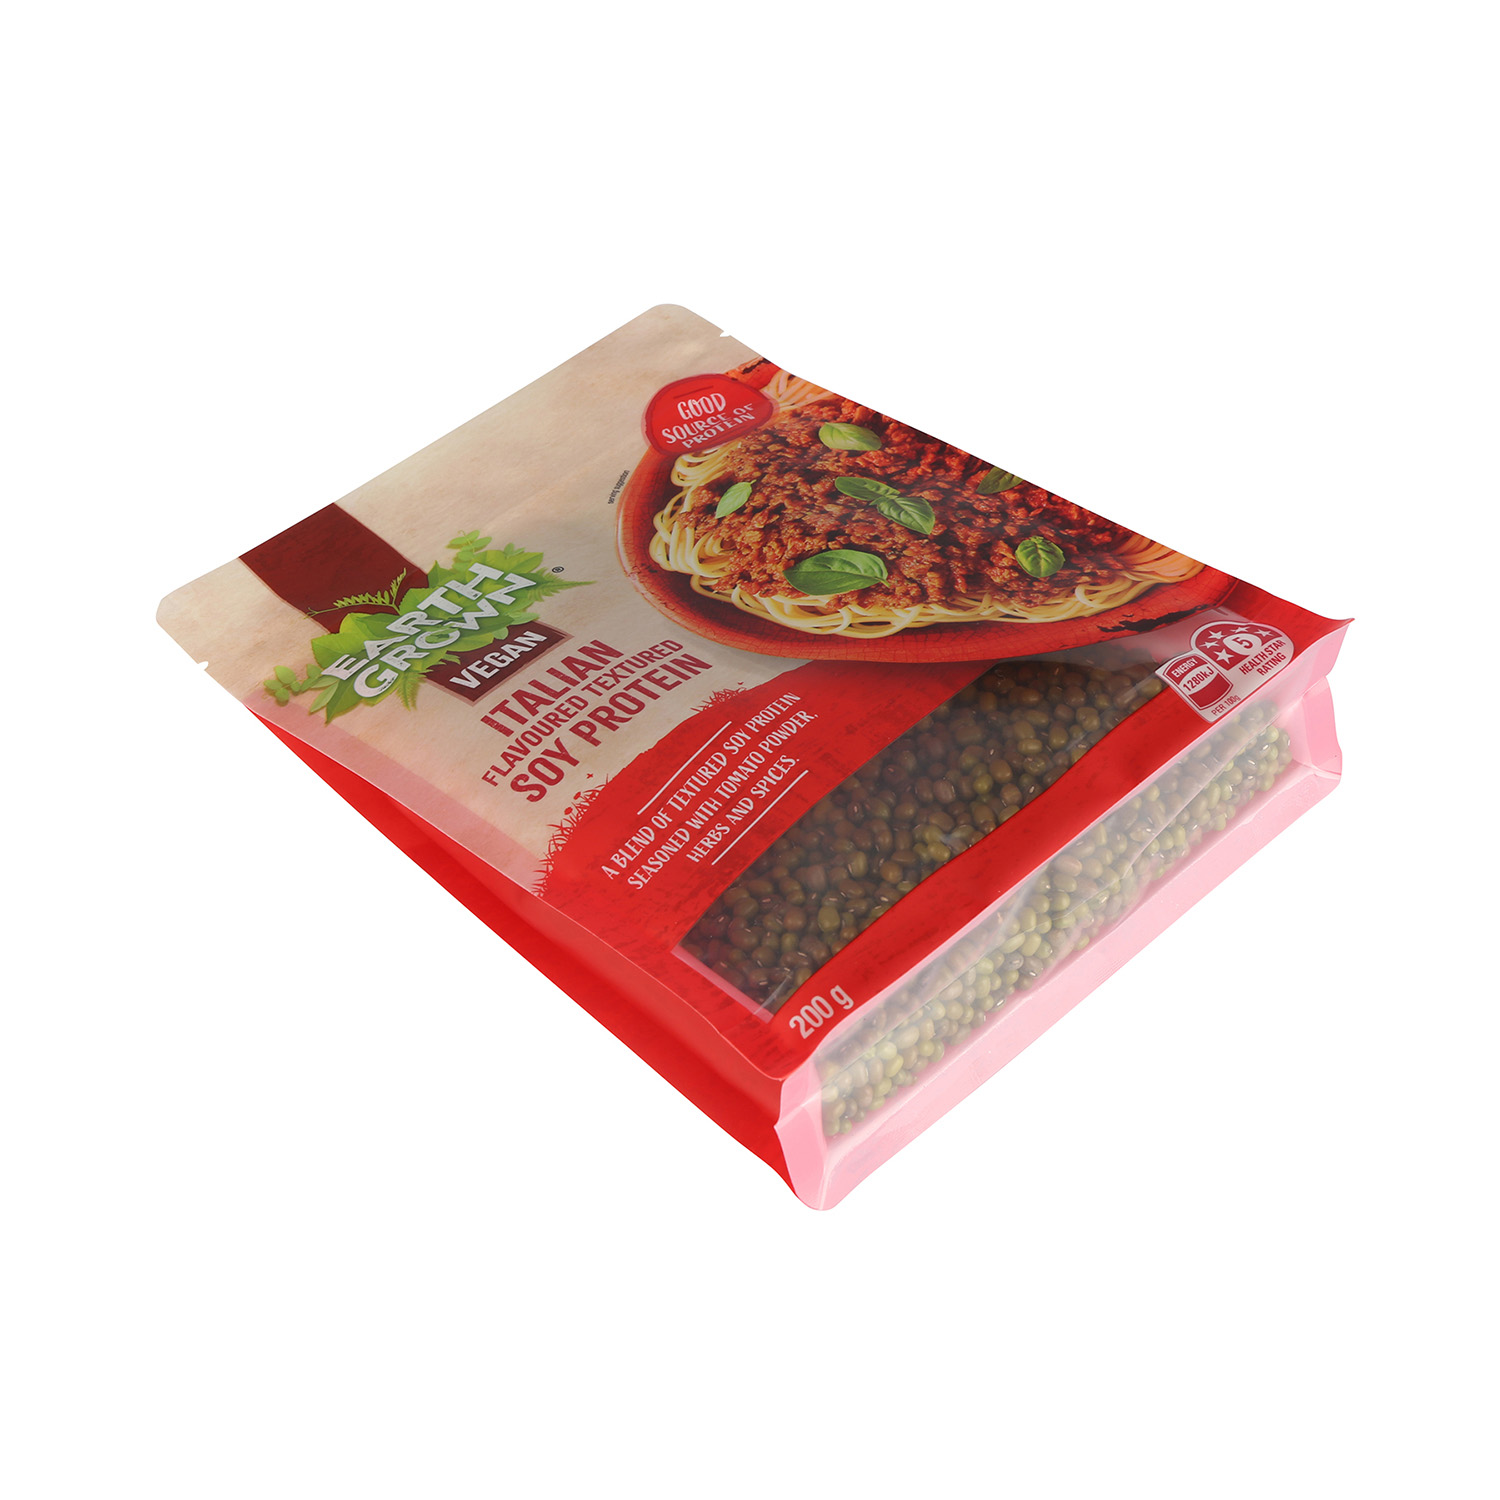 Оптовые индивидуальные печатные пакеты с плоским дном, пригодные для вторичного использования, для упаковки пищевых продуктов с застежкой-молнией и окном